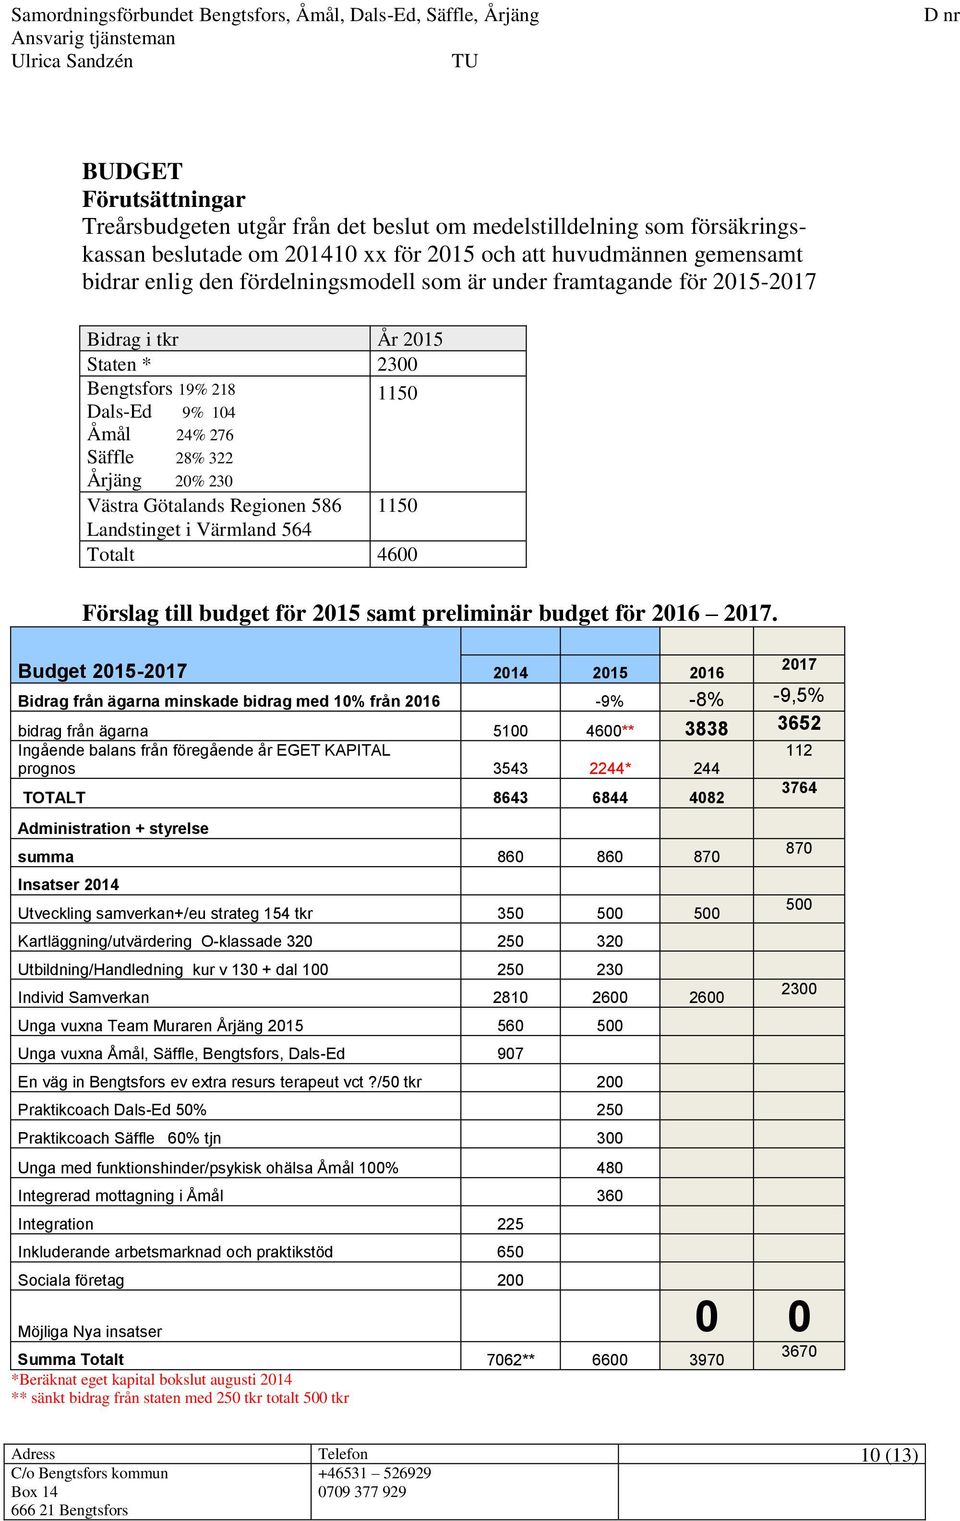 Budget 2015-2017 2014 2015 2016 2017 Bidrag från ägarna minskade bidrag med 10% från 2016-9% -8% -9,5% bidrag från ägarna 5100 4600** 3838 3652 Ingående balans från föregående år EGET KAPITAL 112